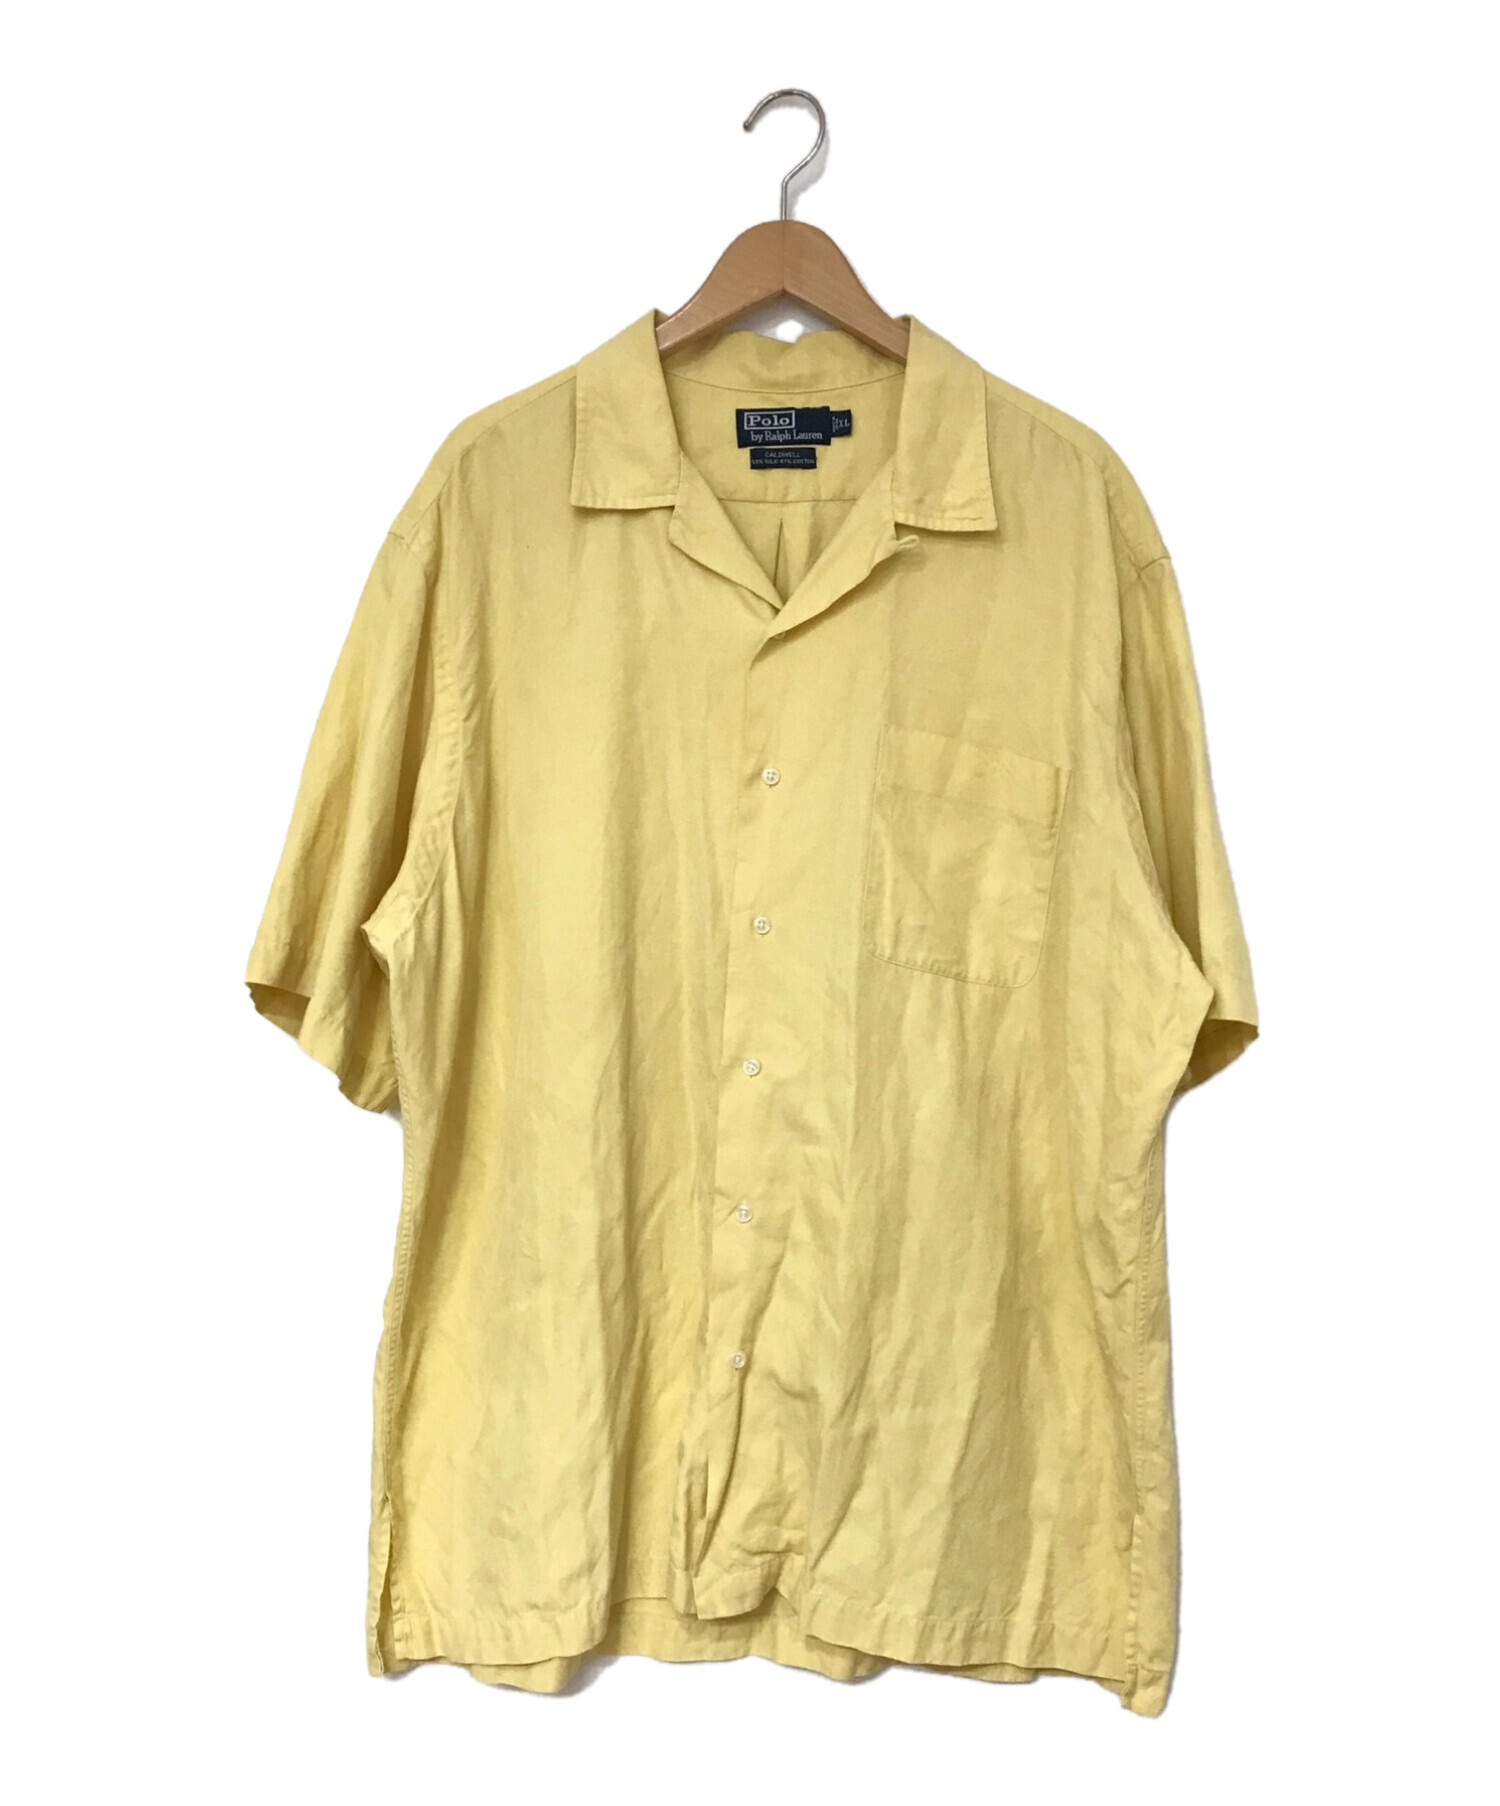 POLO RALPH LAUREN (ポロ・ラルフローレン) CALDWEL オープンカラーシャツ イエロー サイズ:XL